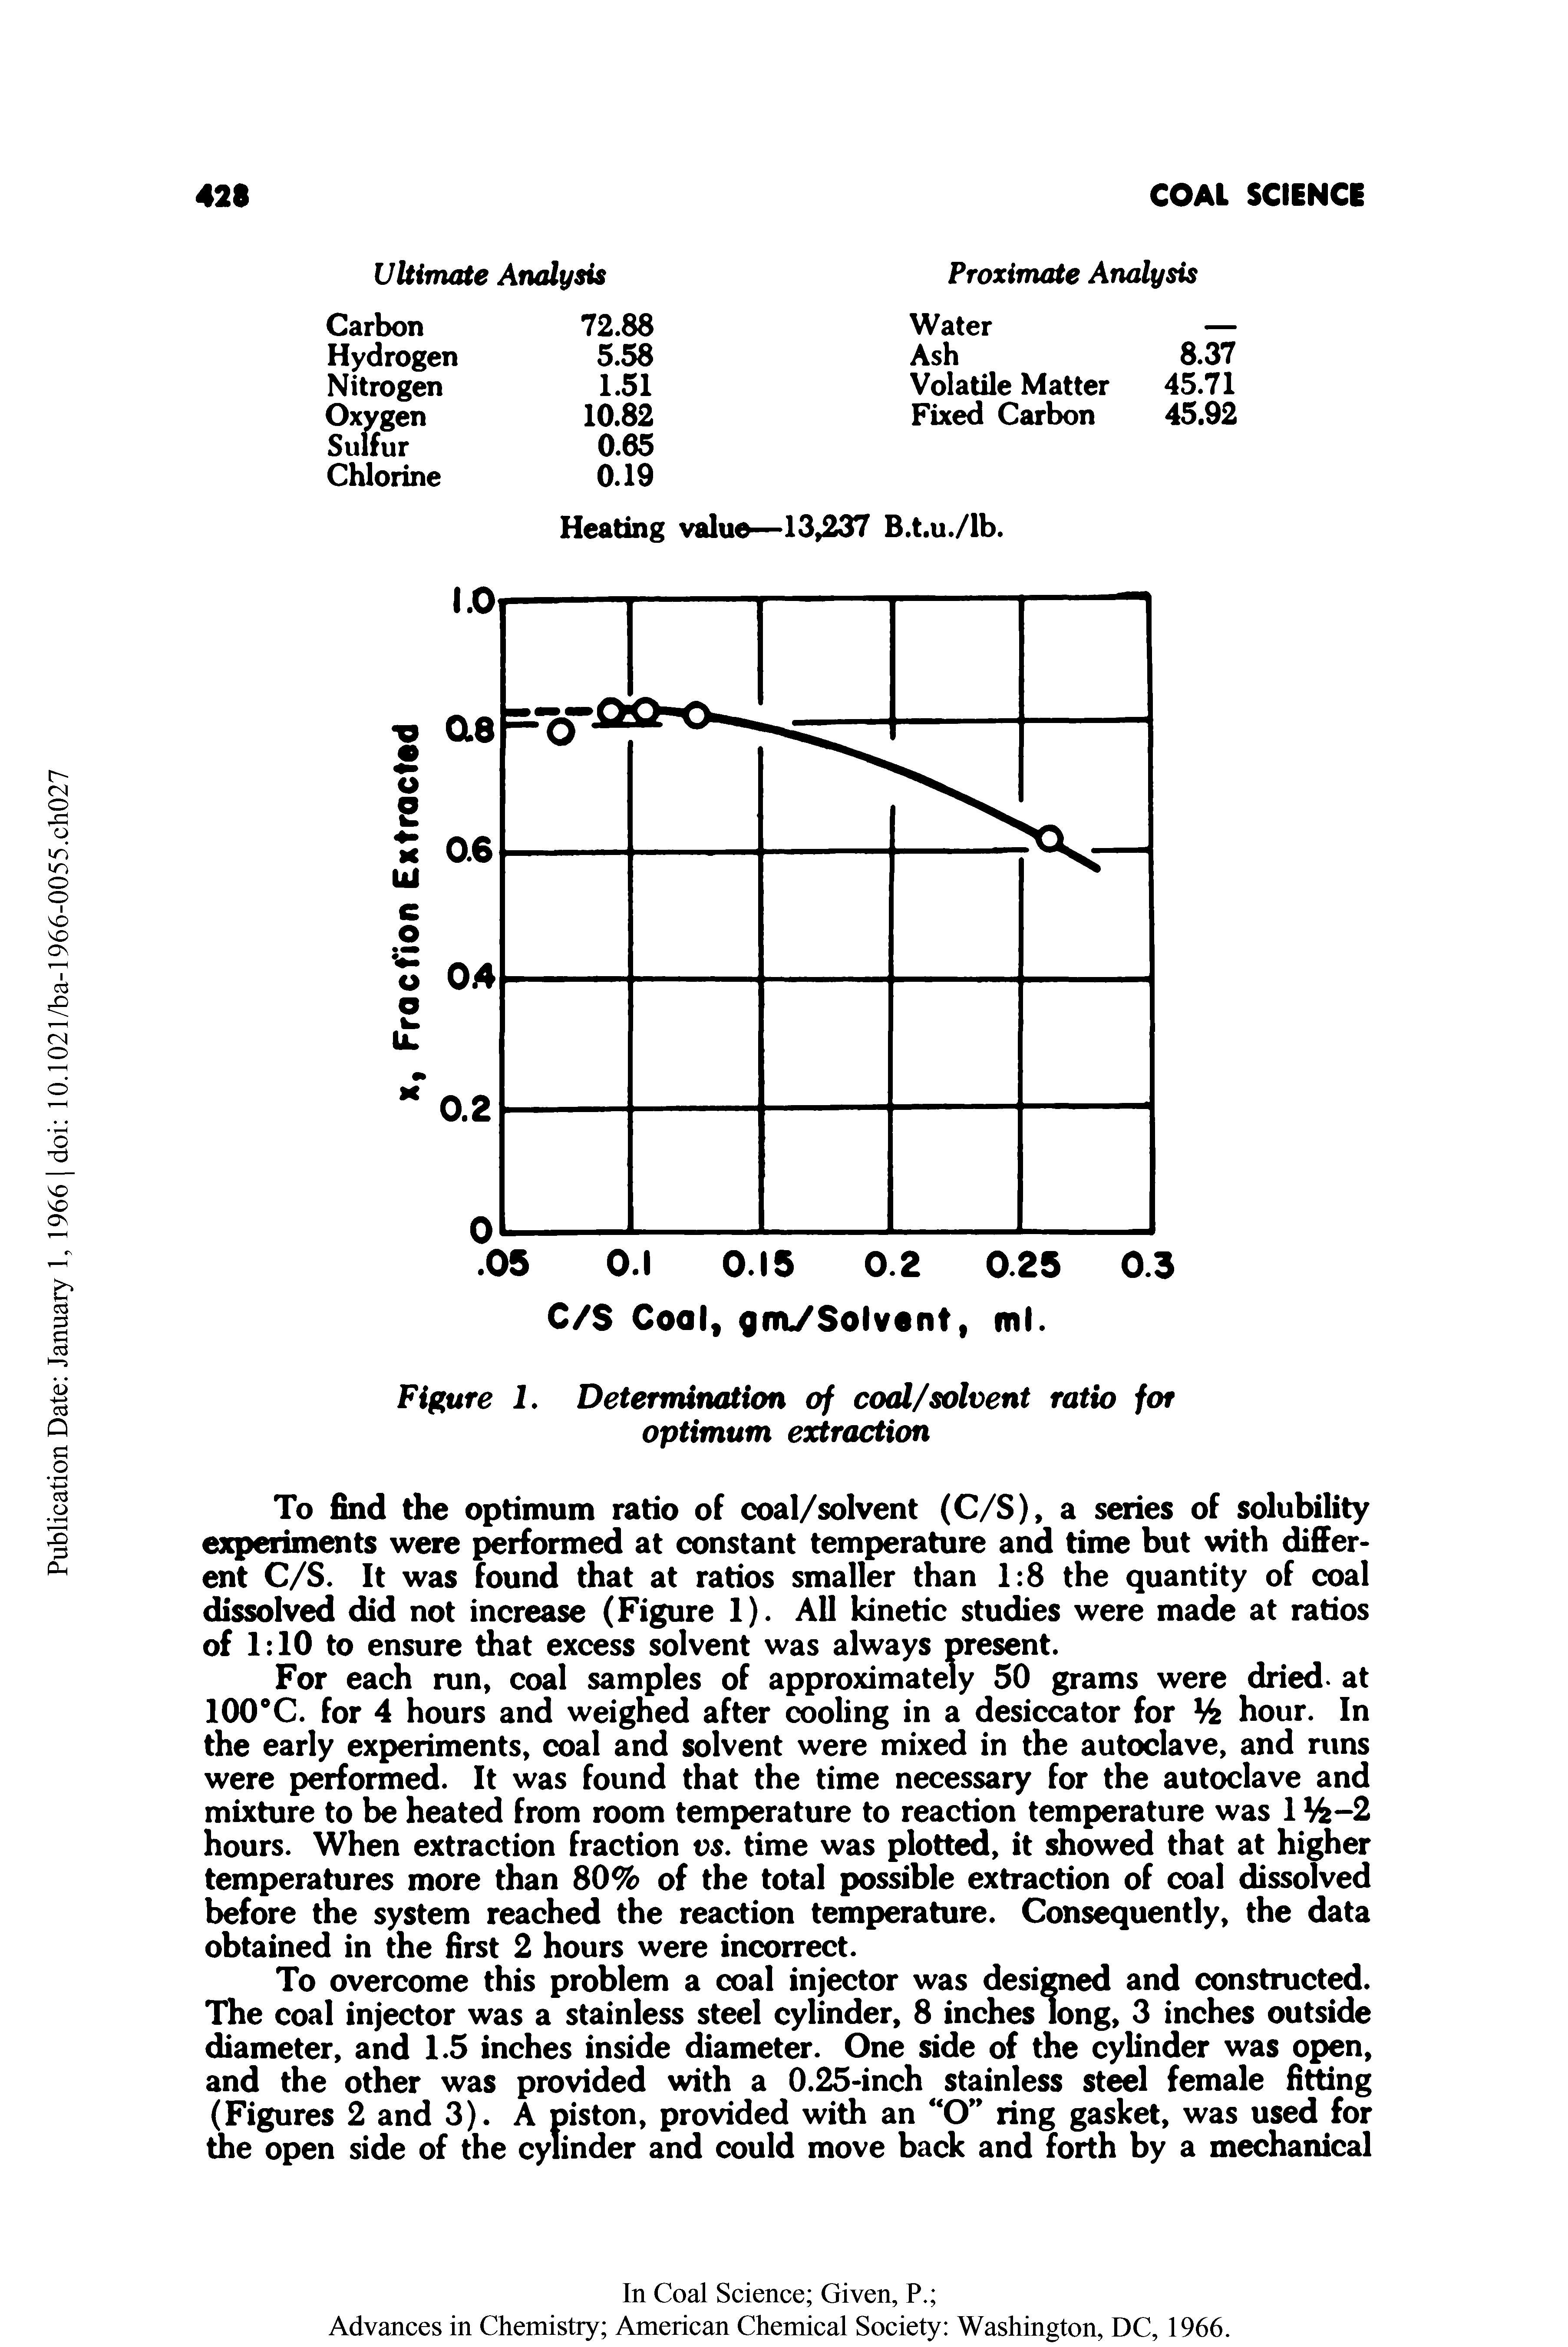 Figure I. Determination of coal/solvent ratio for optimum extraction...